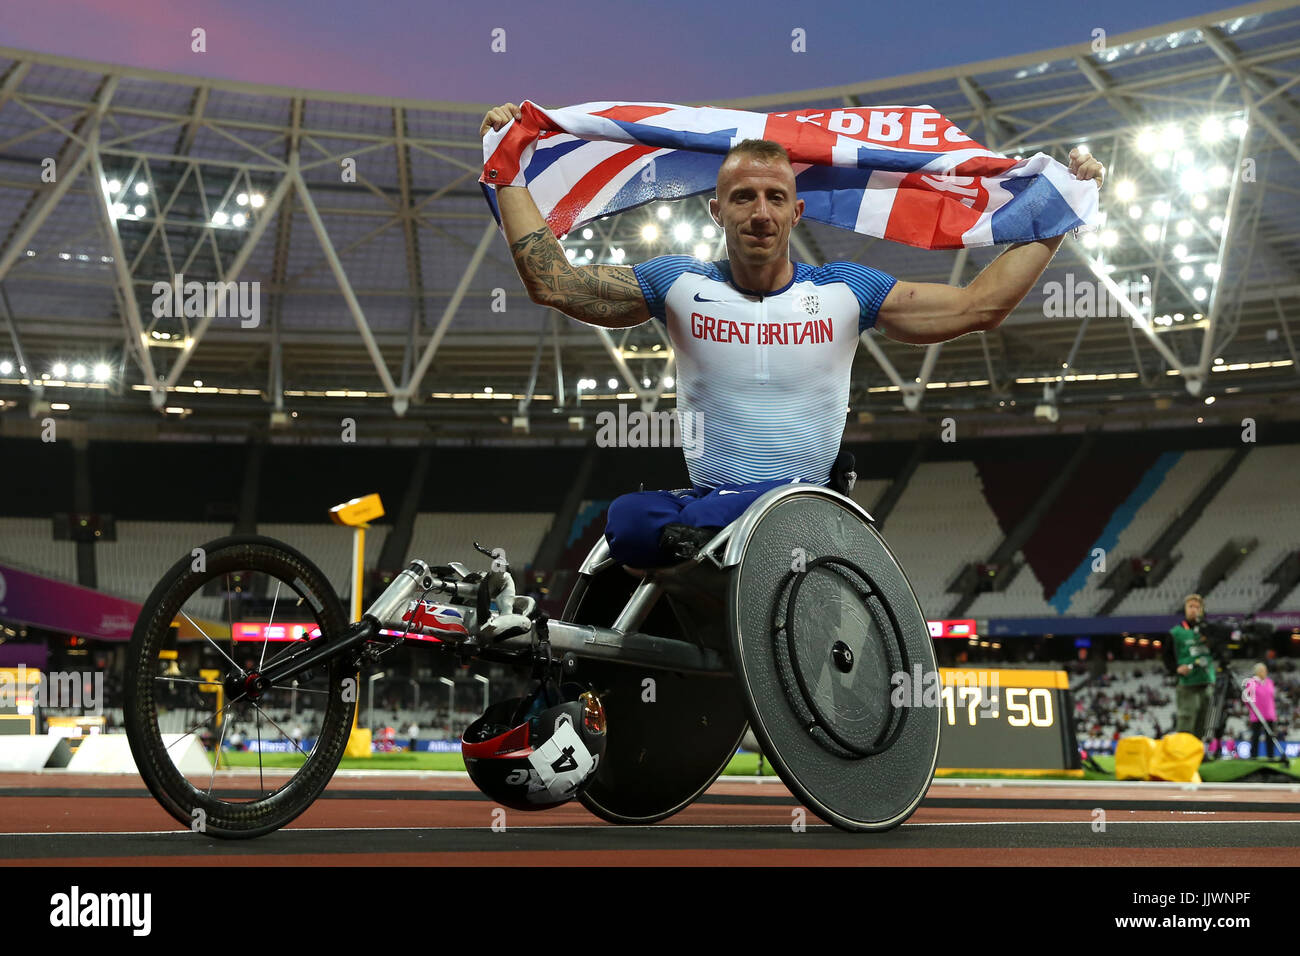 Der Brite Richard Chiassaro feiert gewinnen Bronze in der Herren 400 m-Finale T54 tagsüber sieben der 2017 Para Leichtathletik-Weltmeisterschaften in London Stadion. Stockfoto